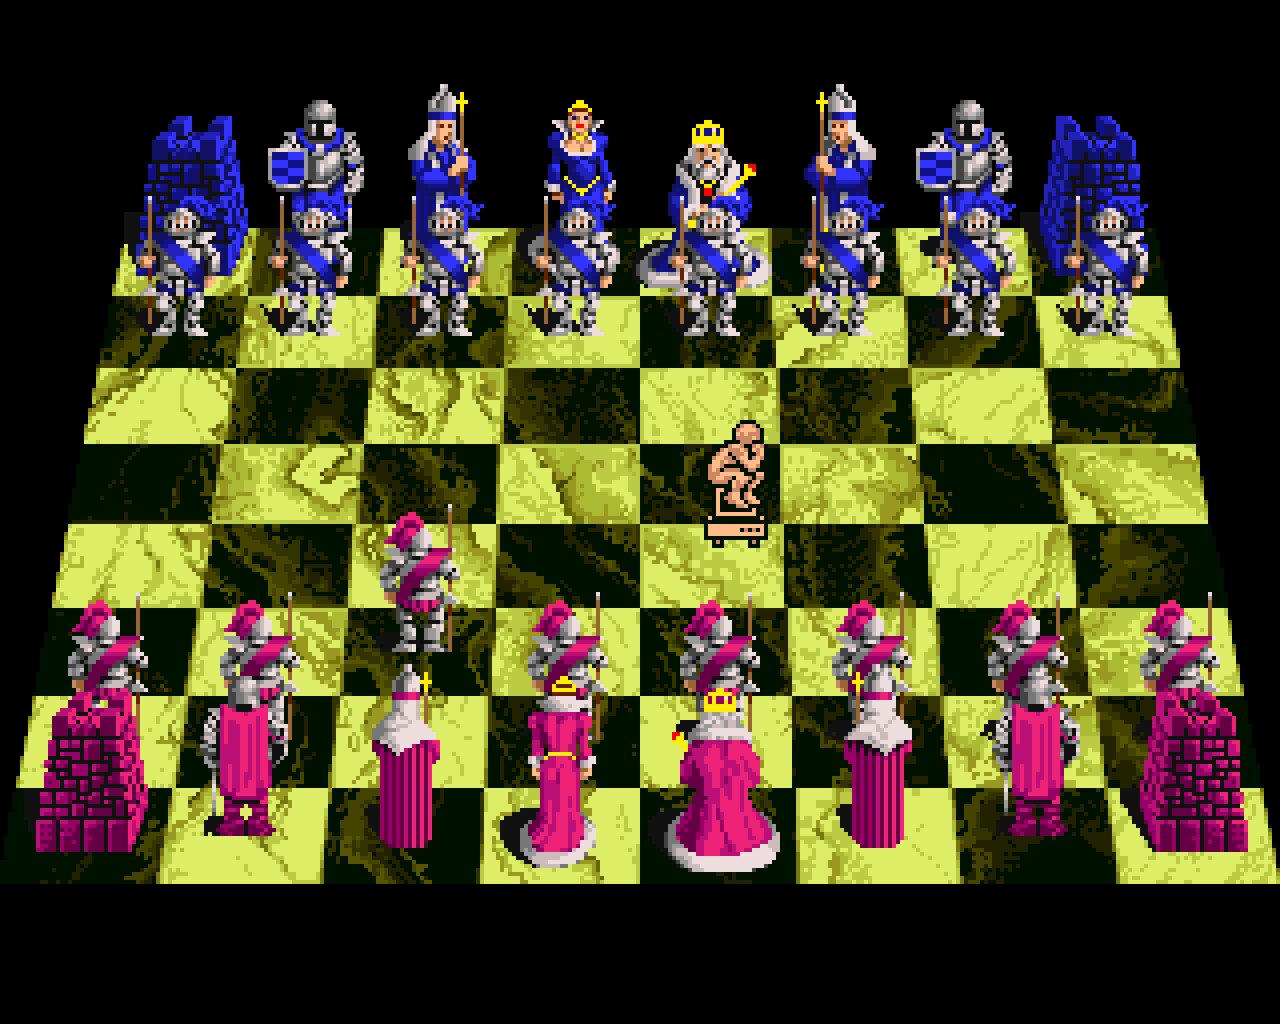 Wer hat damals mit Battle Chess Schach spielen gelernt?